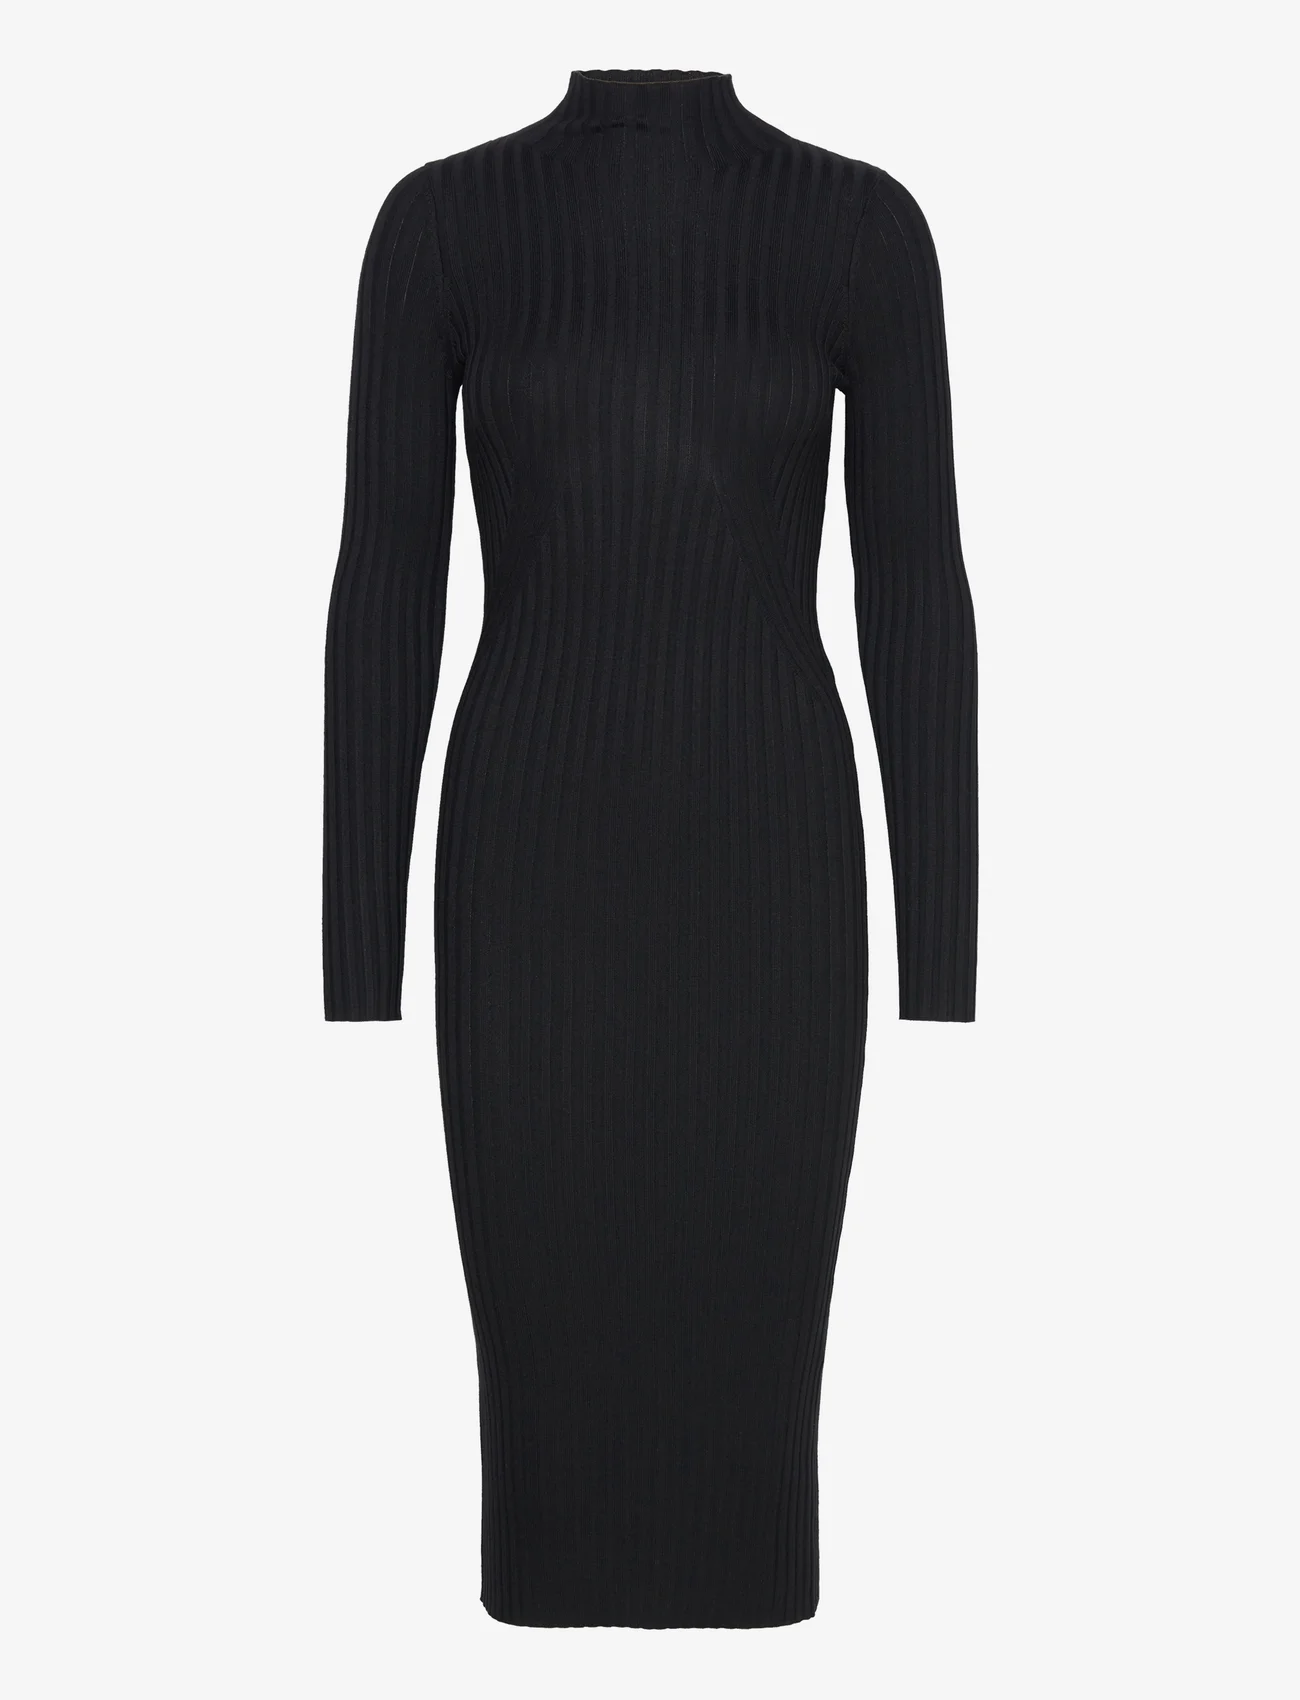 NORR - Karlina LS dress - stramme kjoler - black - 0